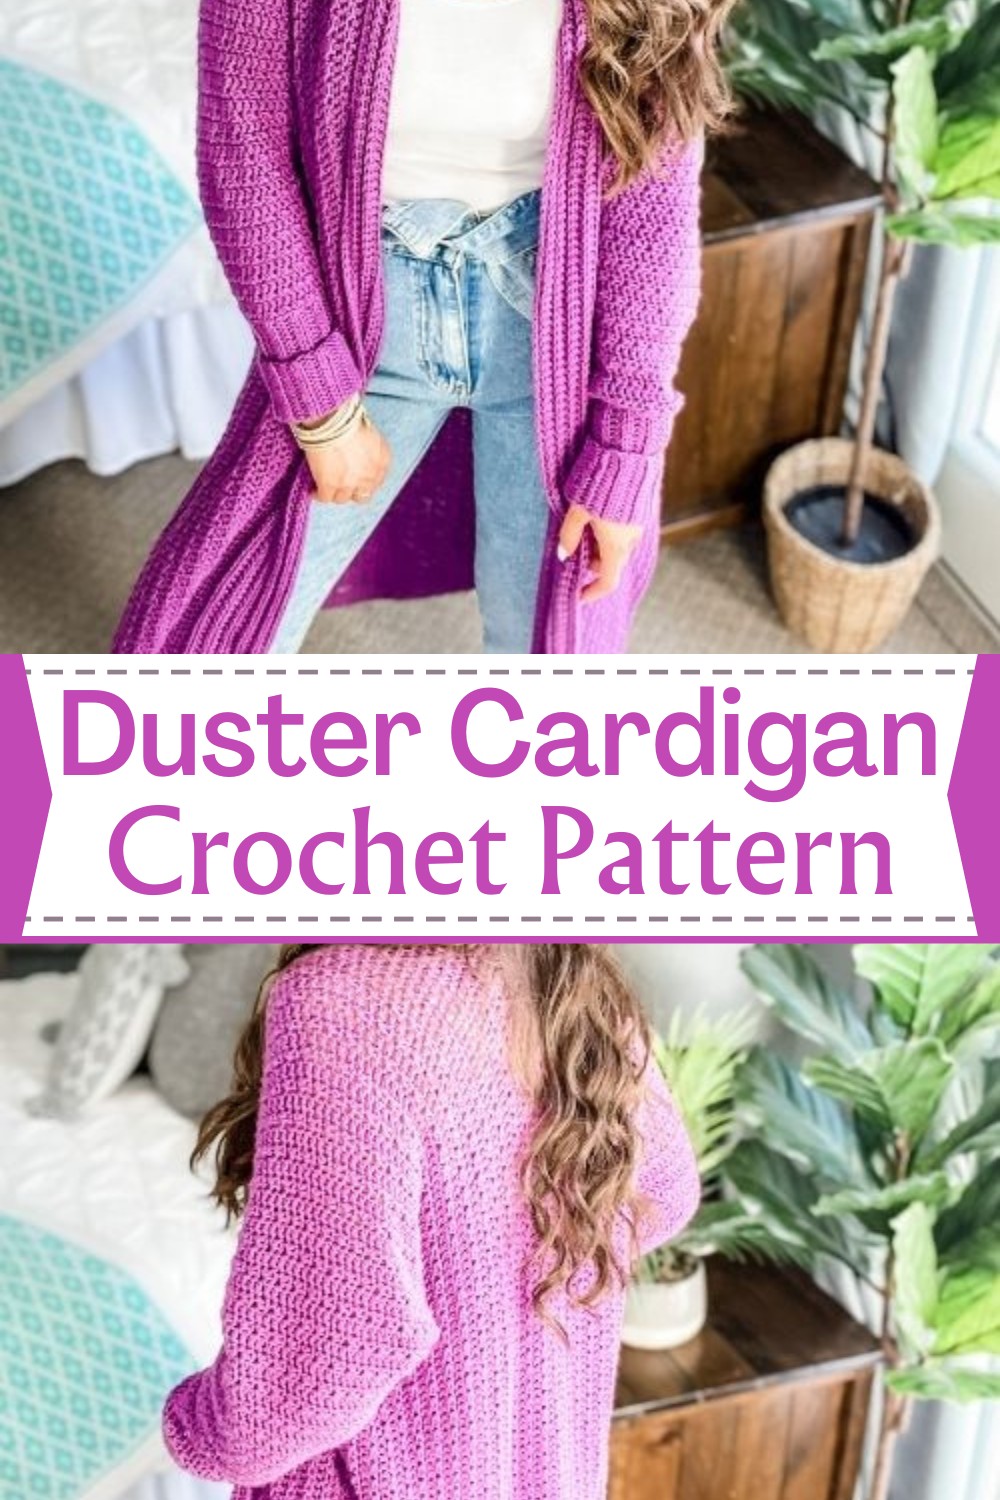 Duster Cardigan Crochet Pattern